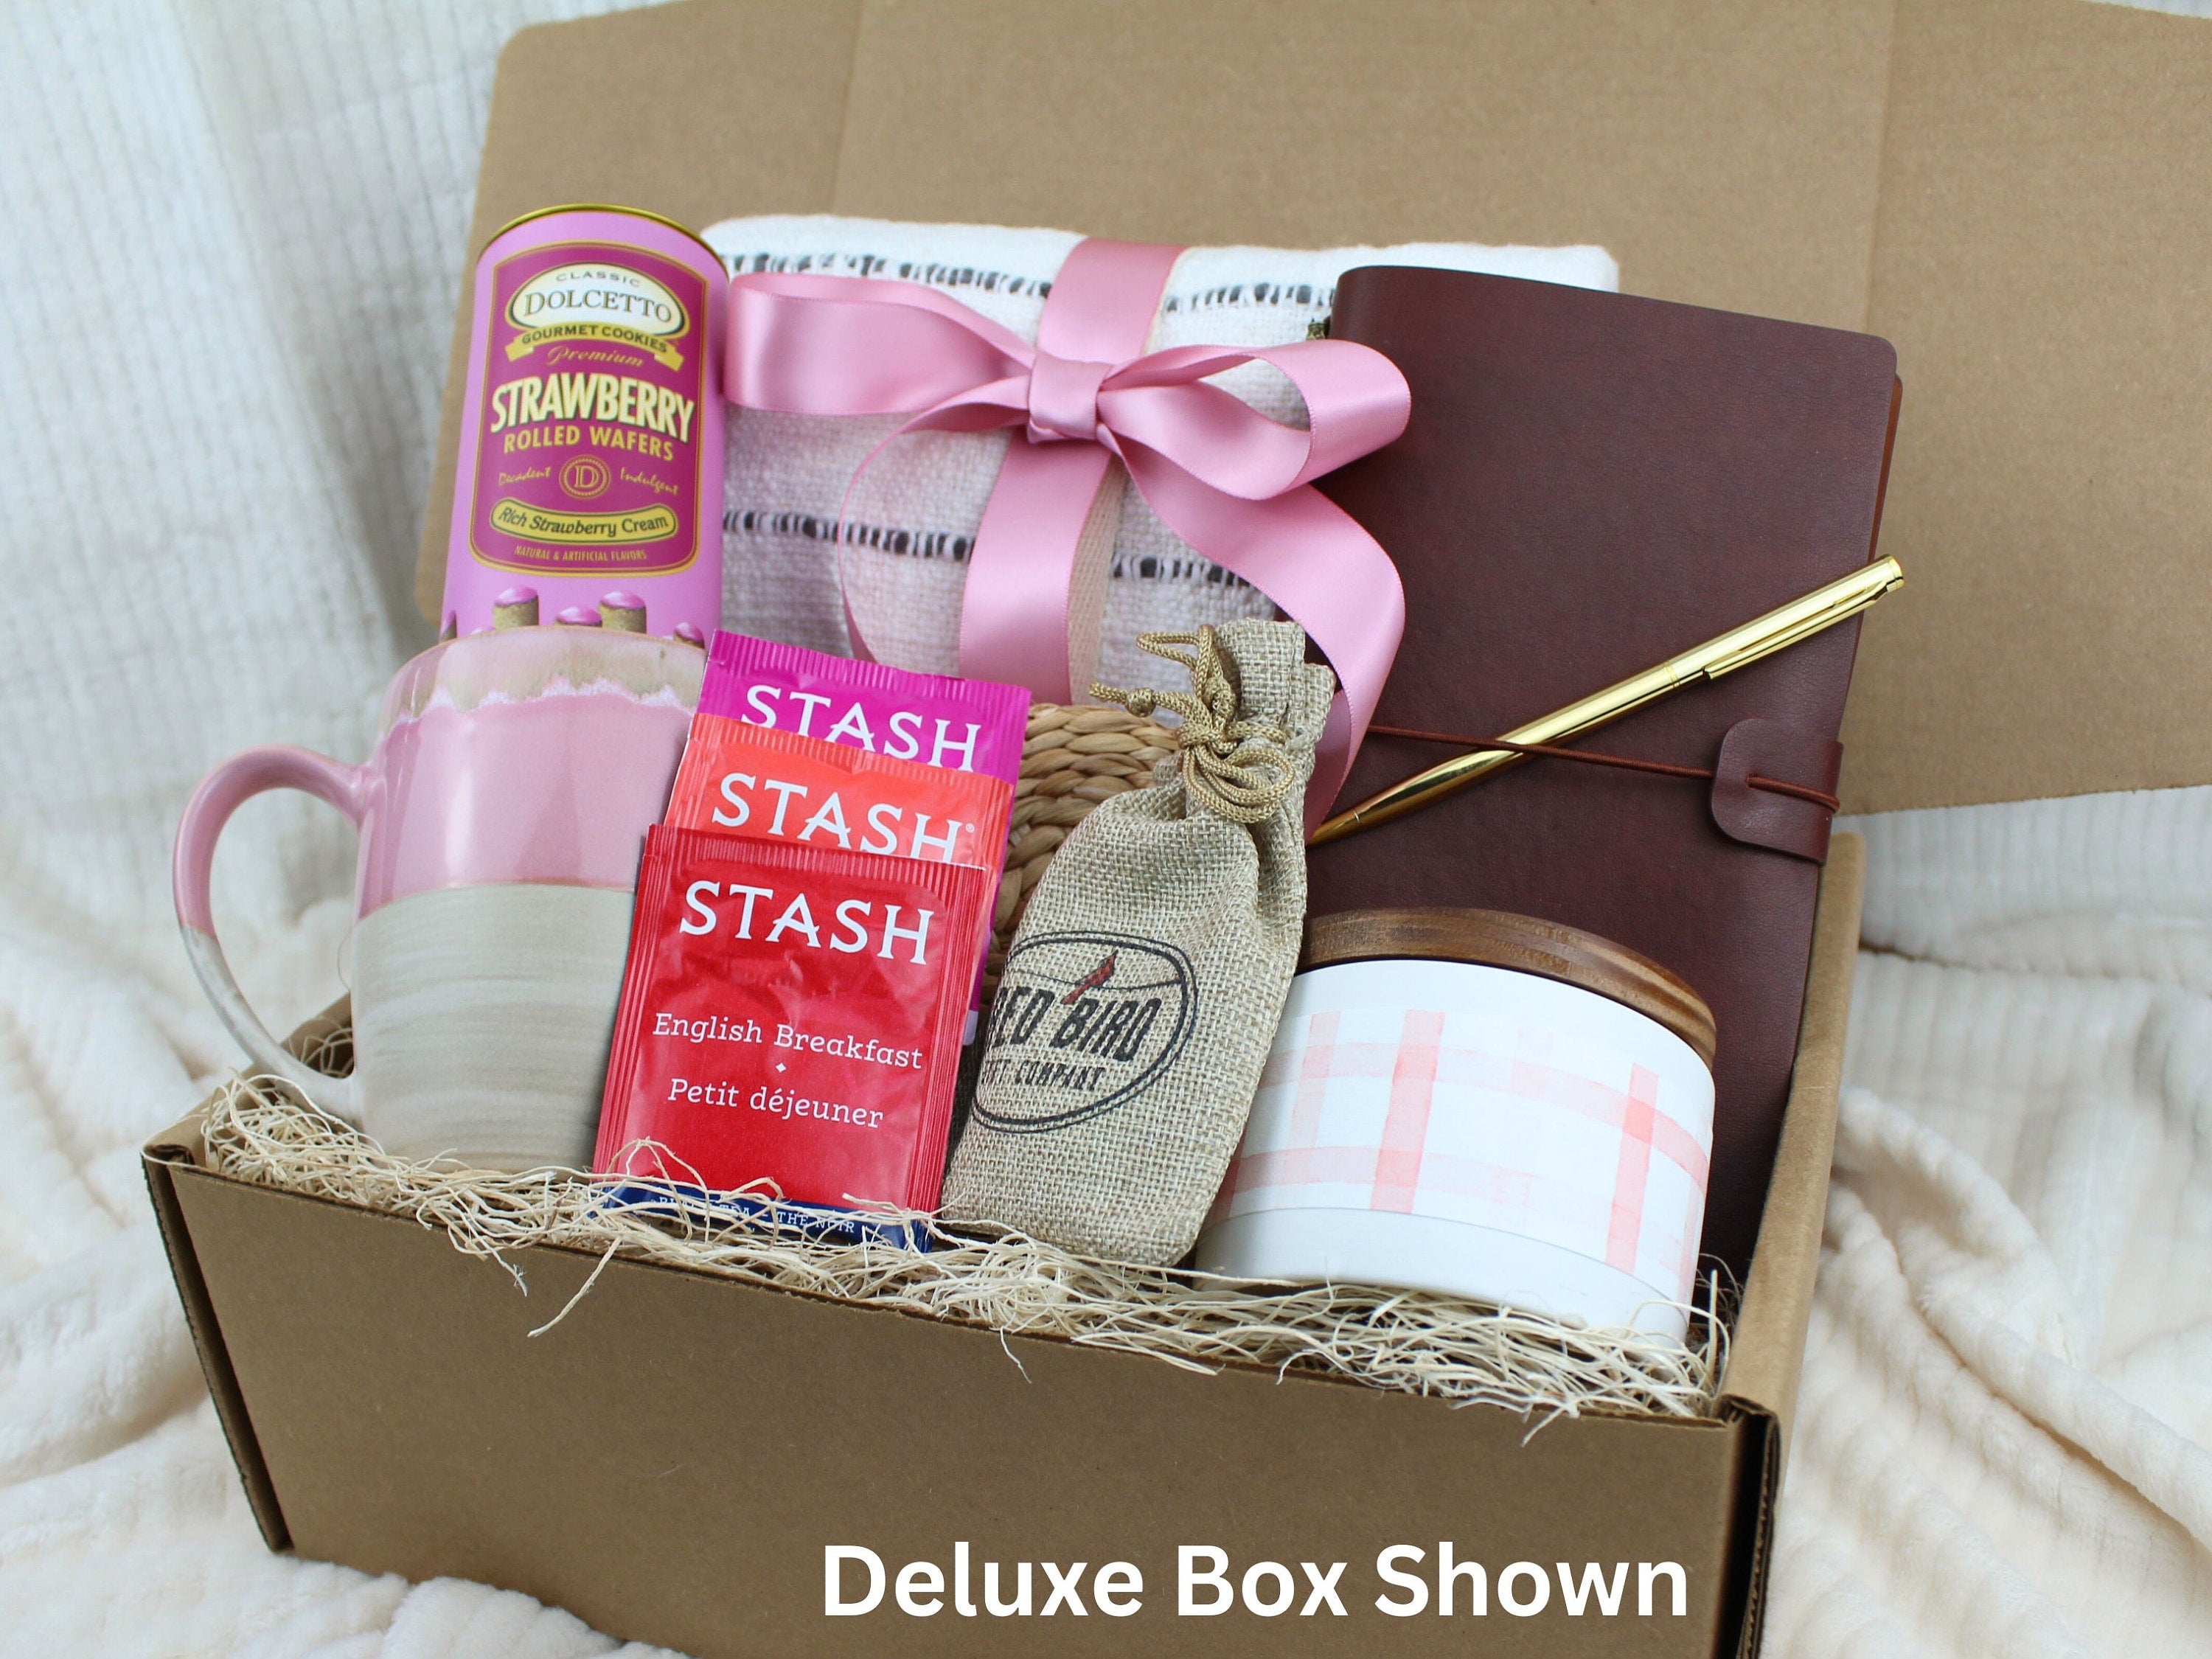 Sending A Hug Gift Box - Pink Mug